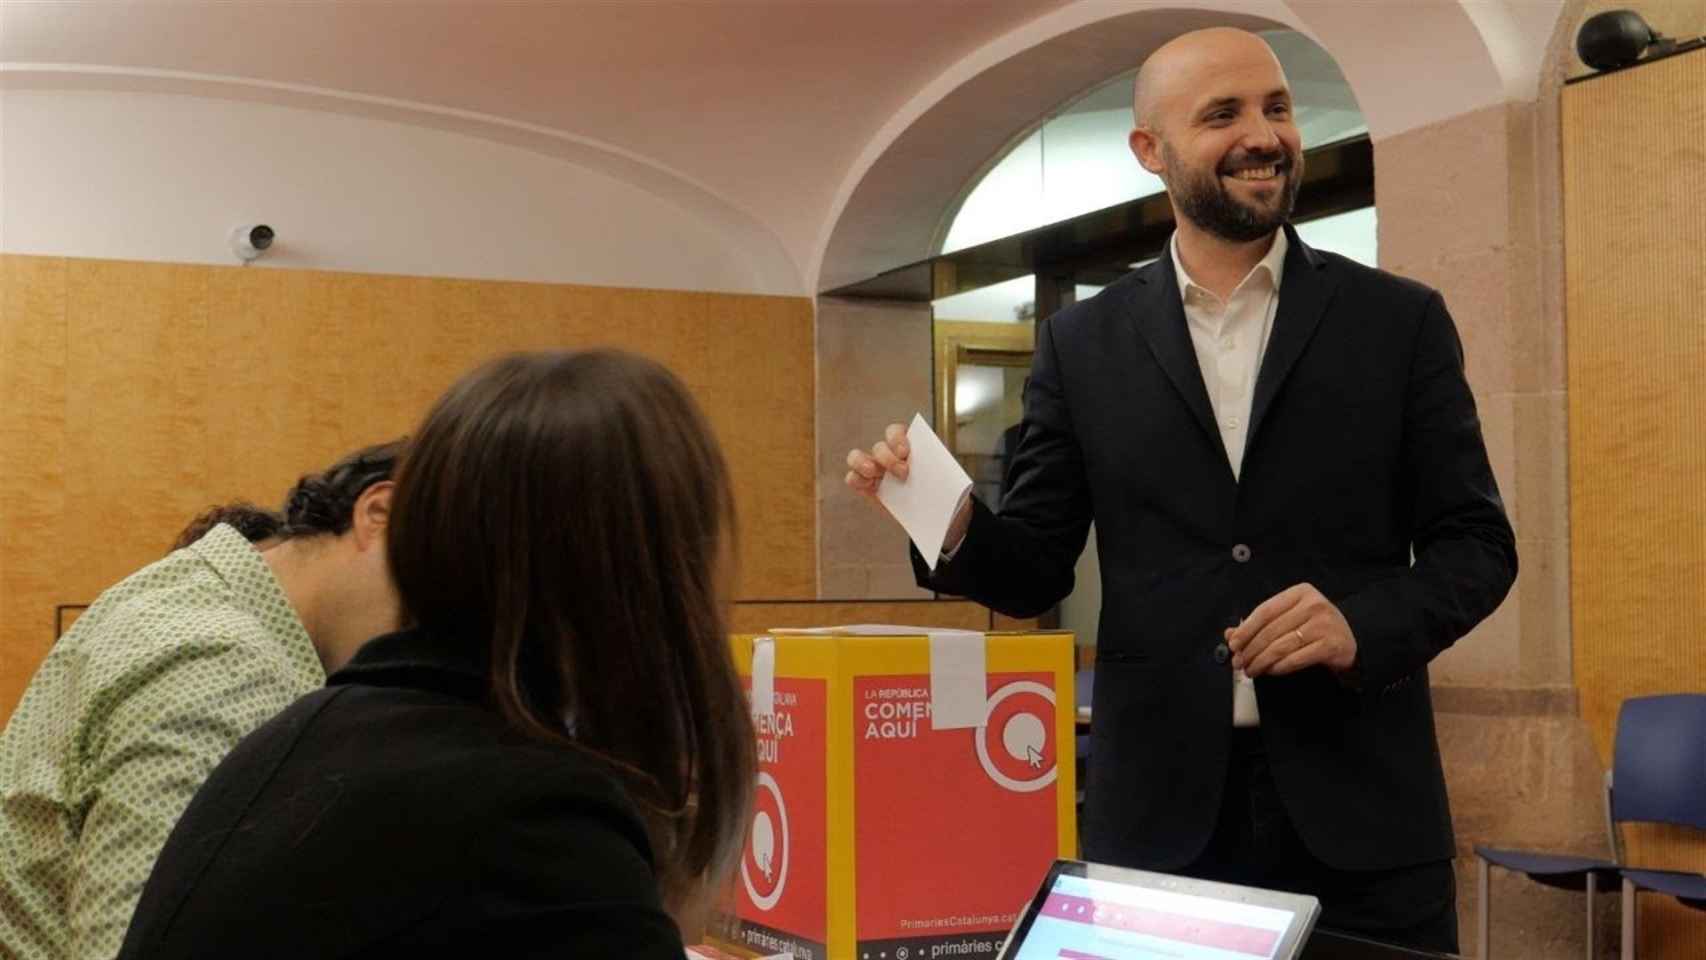 El candidato Jordi Graupera durante la votación de las primarias de su partido / PRIMÀRIES BARCELONA